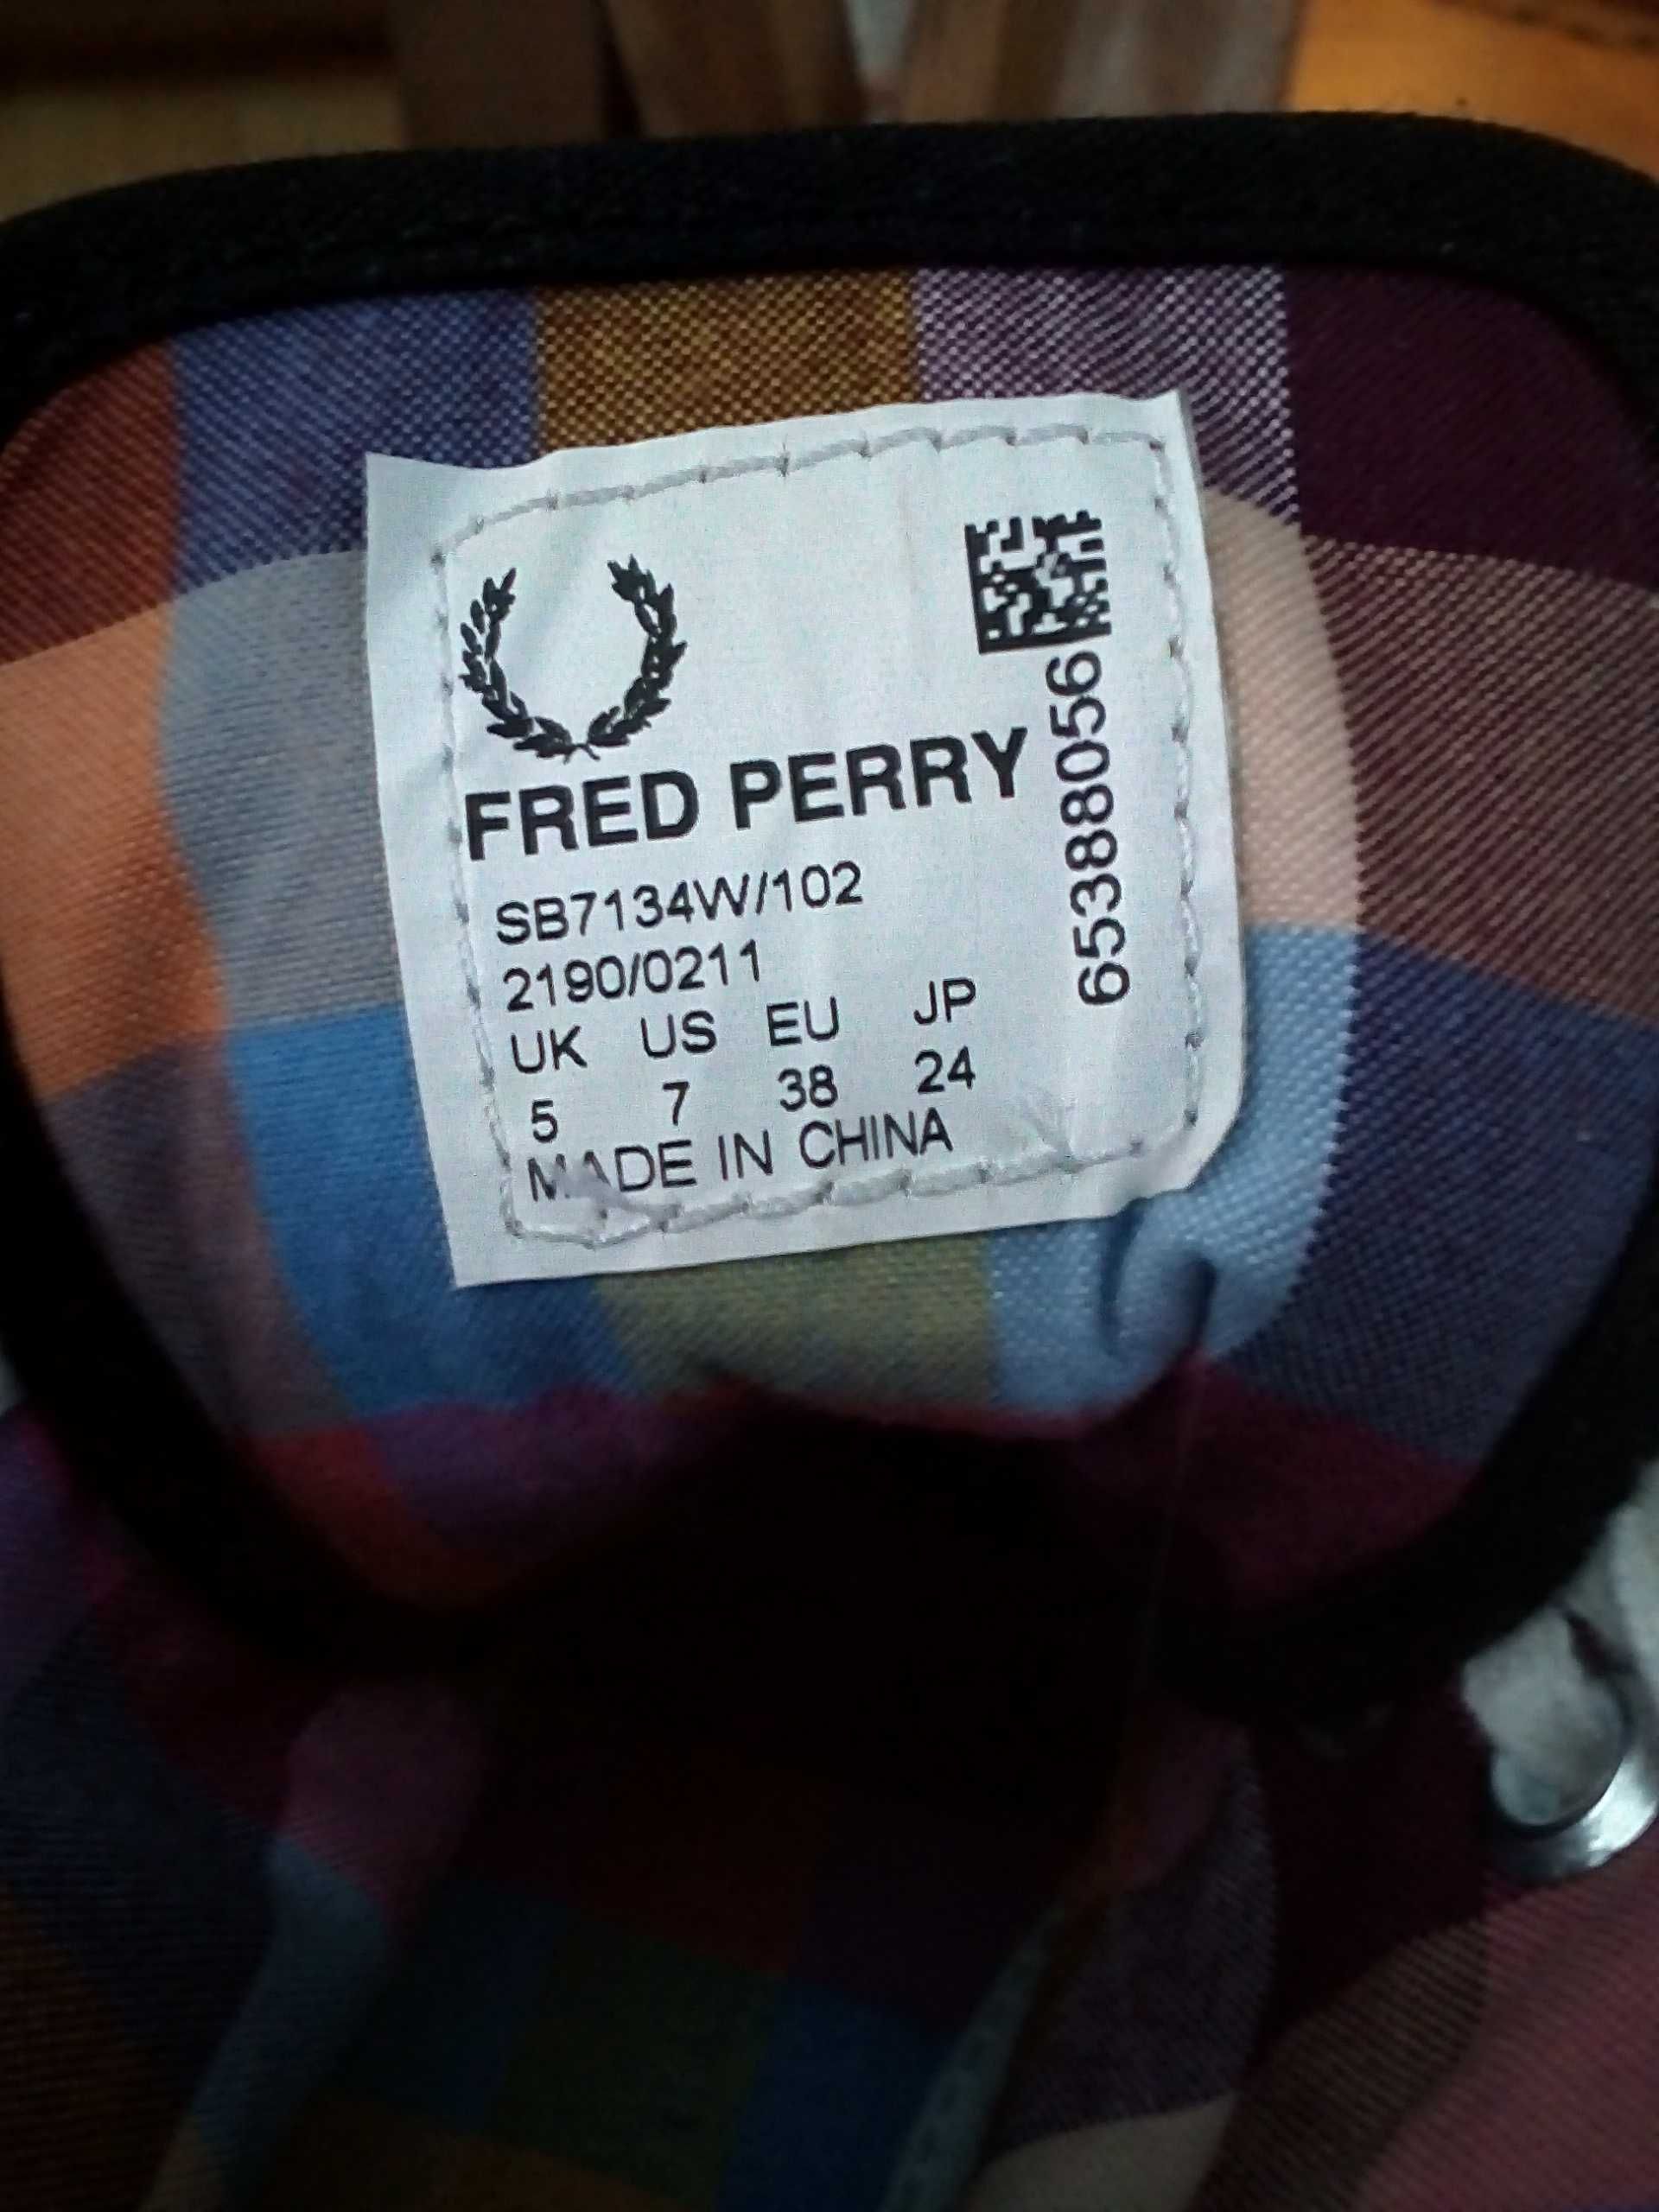 FRED PERRY lekkie wysokie trampki - nowe - rozmiar 38